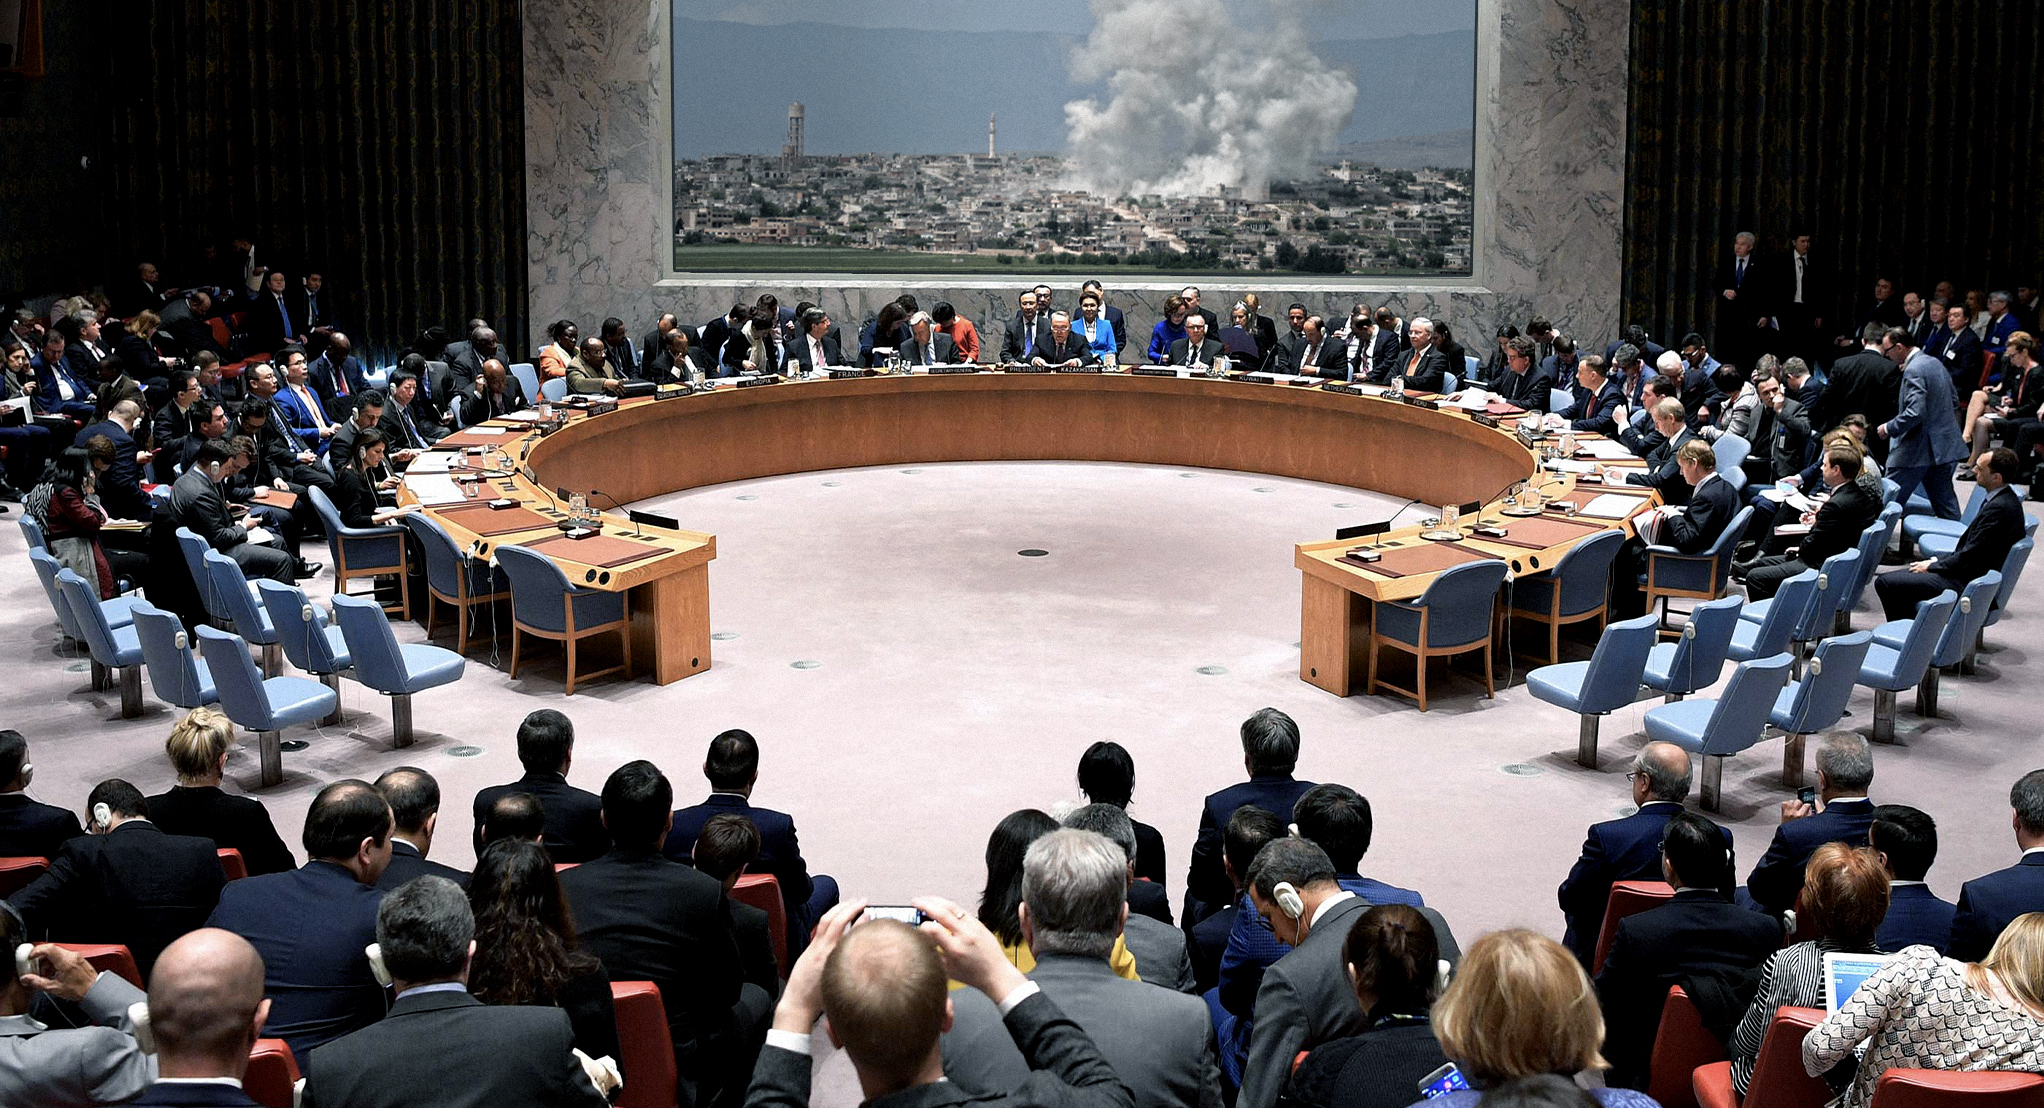 صورة مجلس الأمن يعقد اجتماعاً لمناقشة أوضاع إدلب والدردشة حول الأزمة الحالية وتبادل الفيتوهات